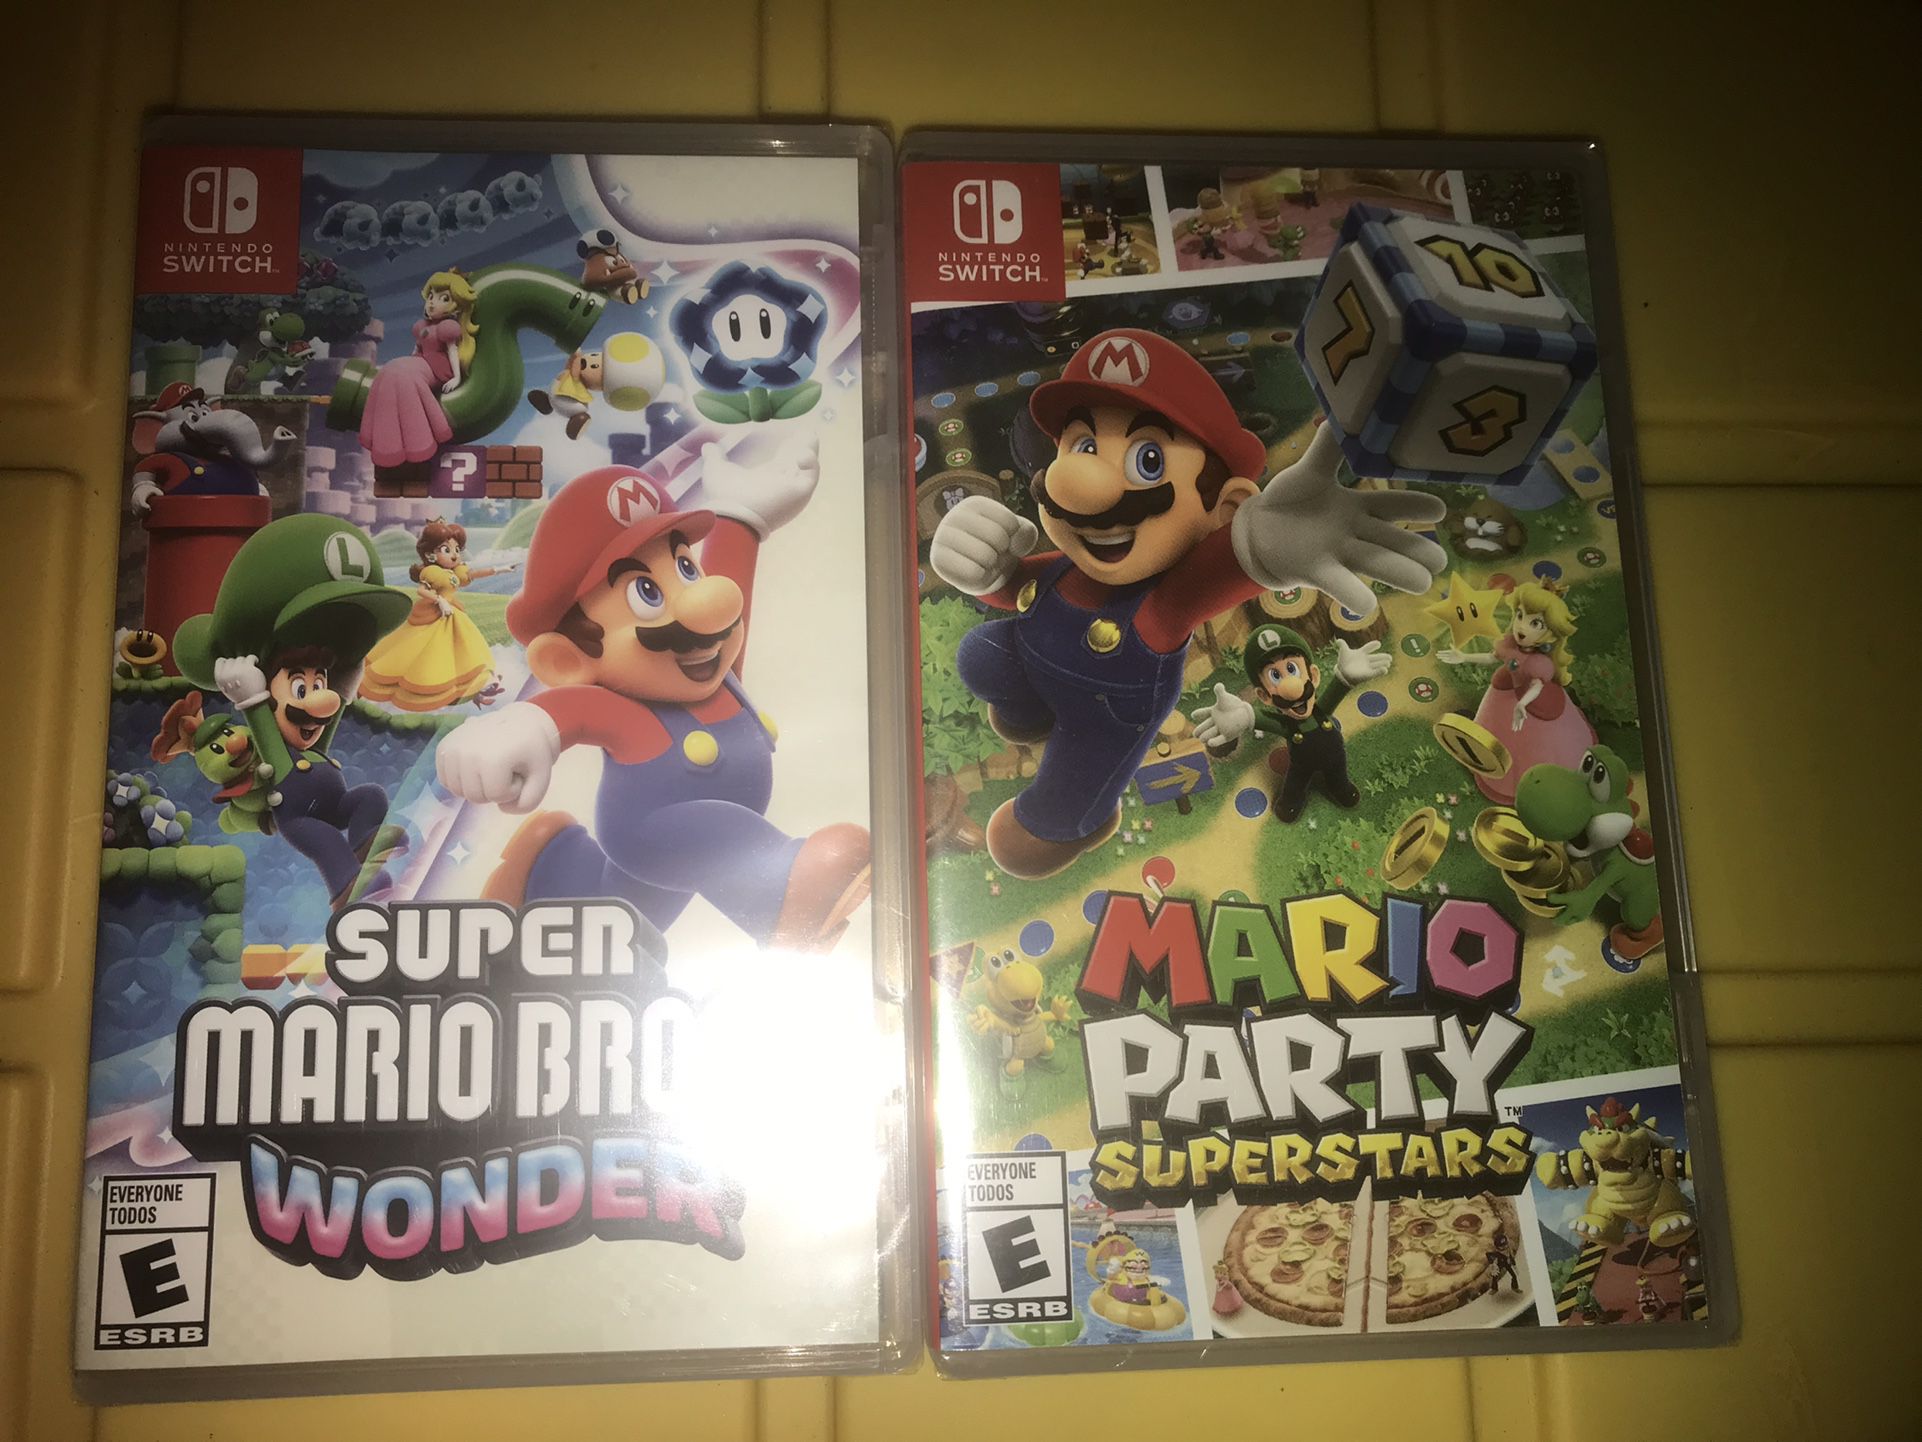 Super Mario Bros wonder & Mario party superstars 